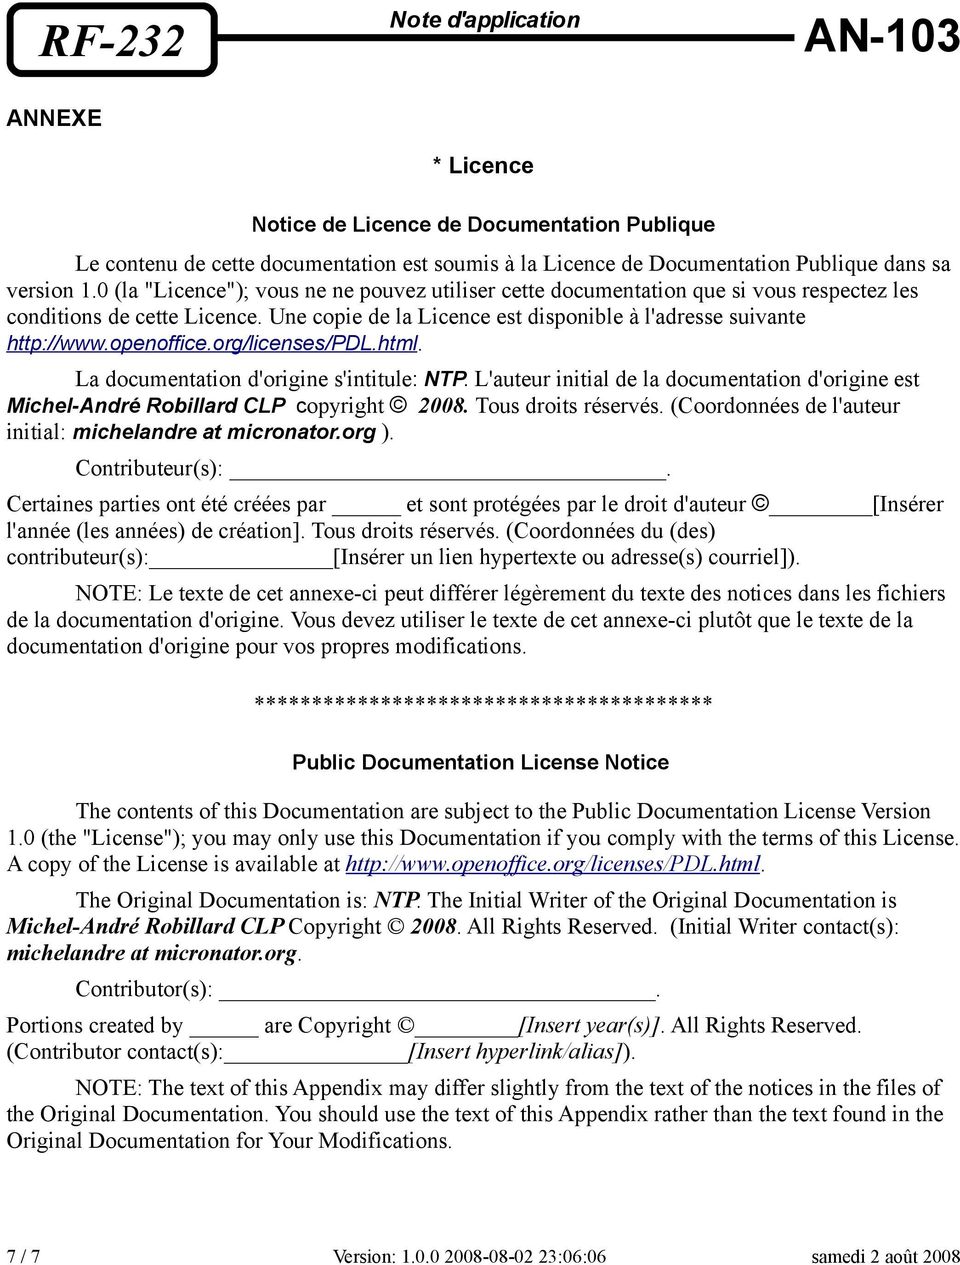 openoffice.org/licenses/pdl.html. La documentation d'origine s'intitule: NTP. L'auteur initial de la documentation d'origine est Michel-André Robillard CLP copyright 2008. Tous droits réservés.